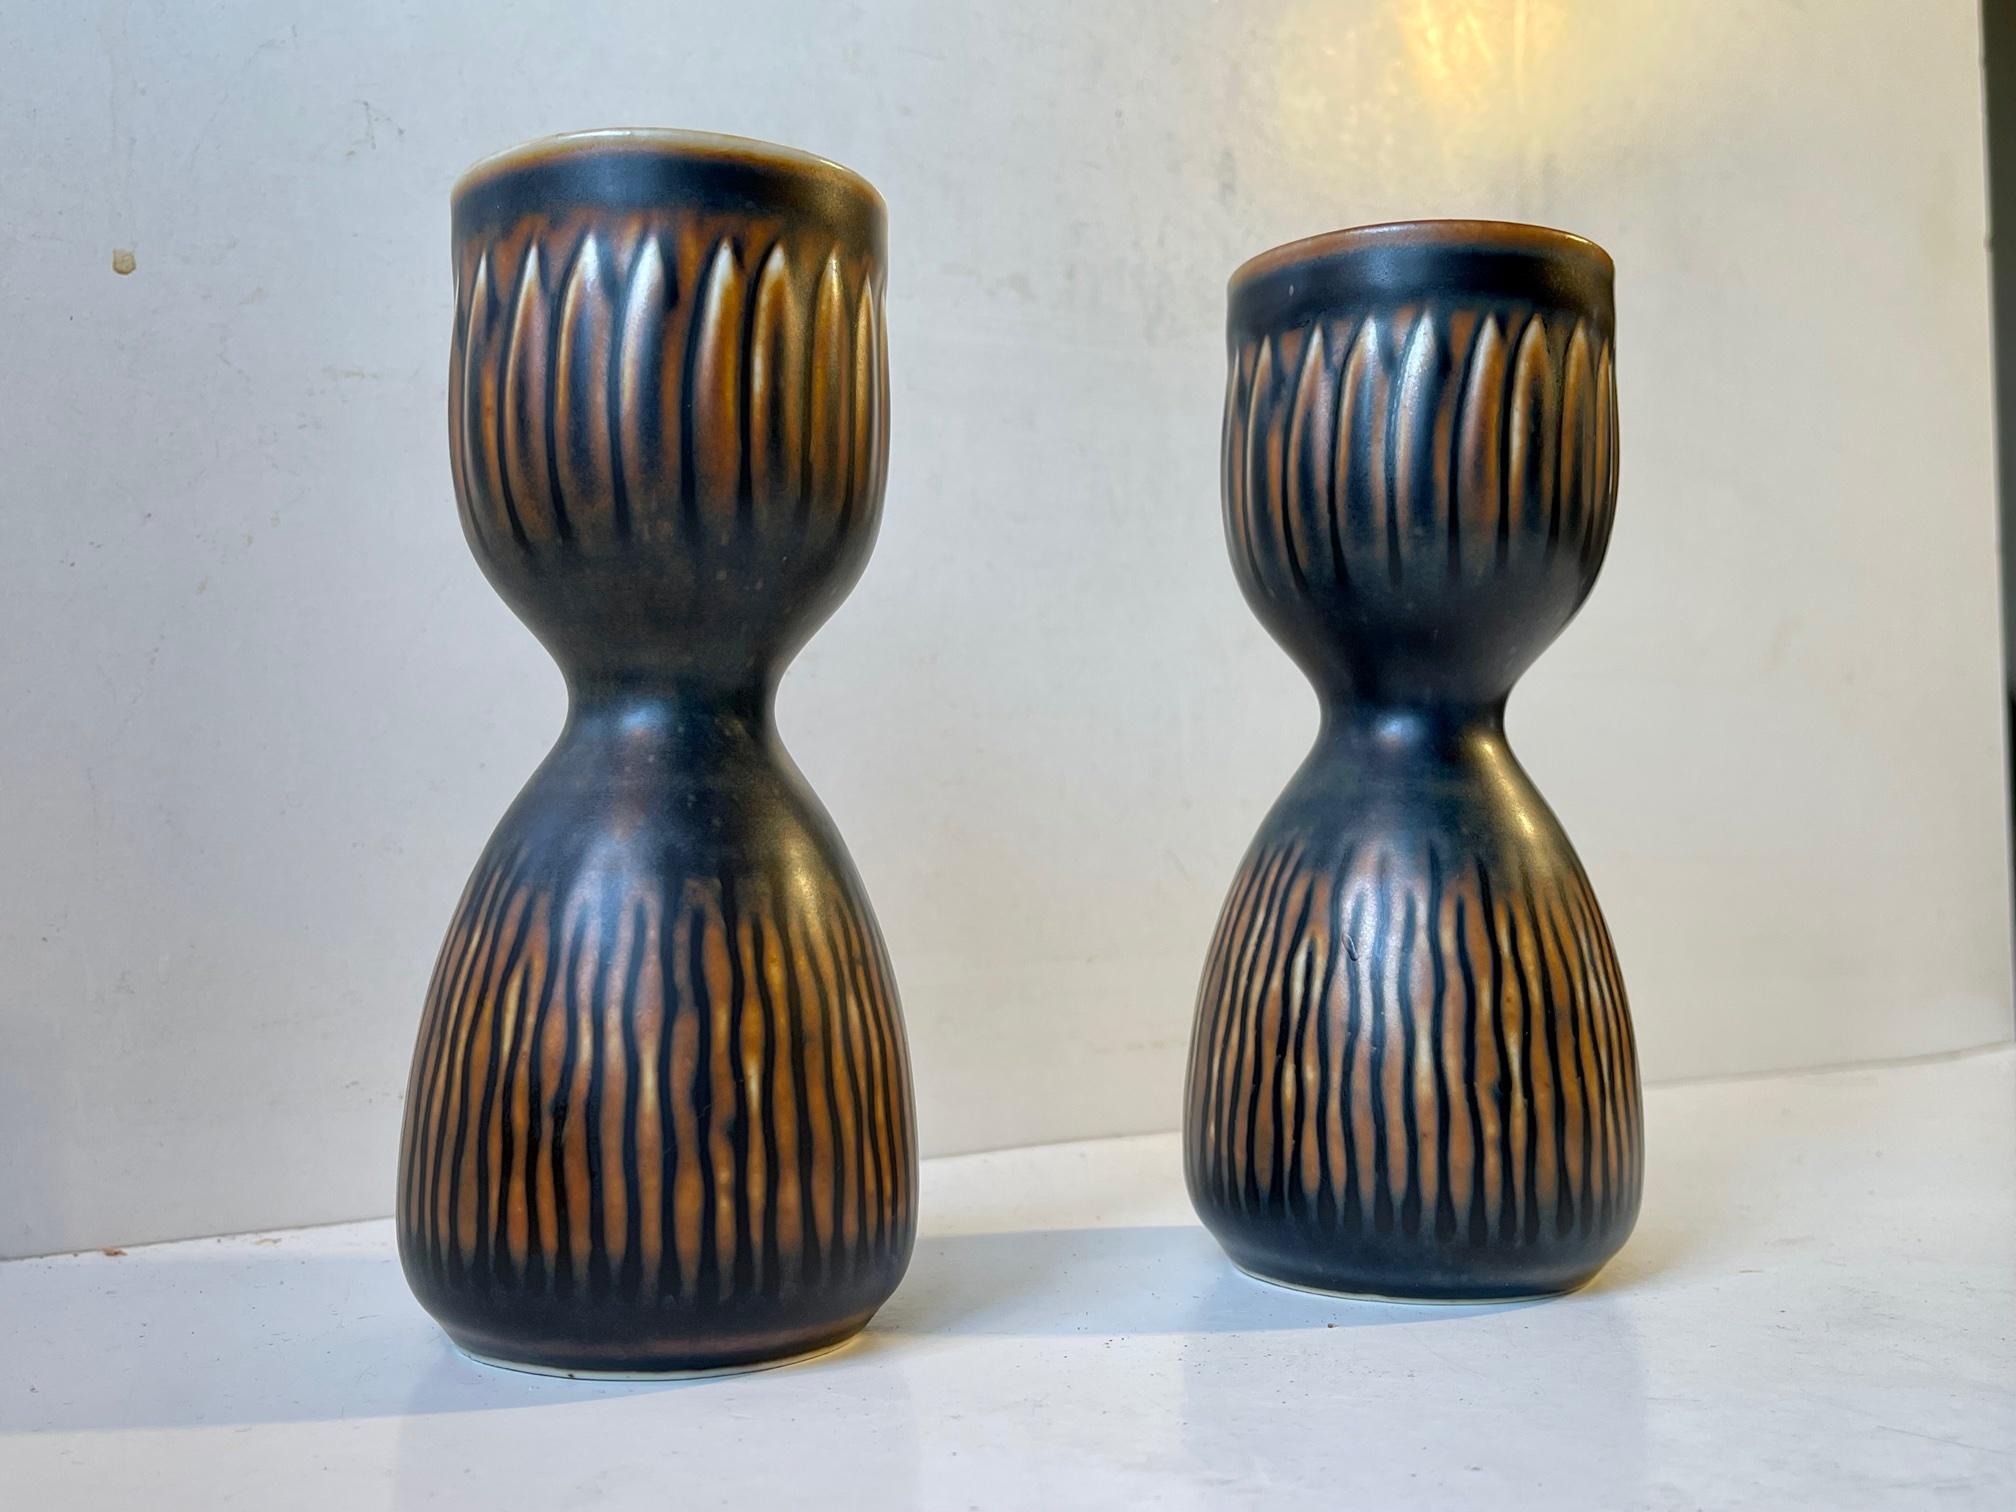 Royal Copenhagen Glazed Stoneware Candlesticks by Gerd Bøgelund, 1960s For Sale 1